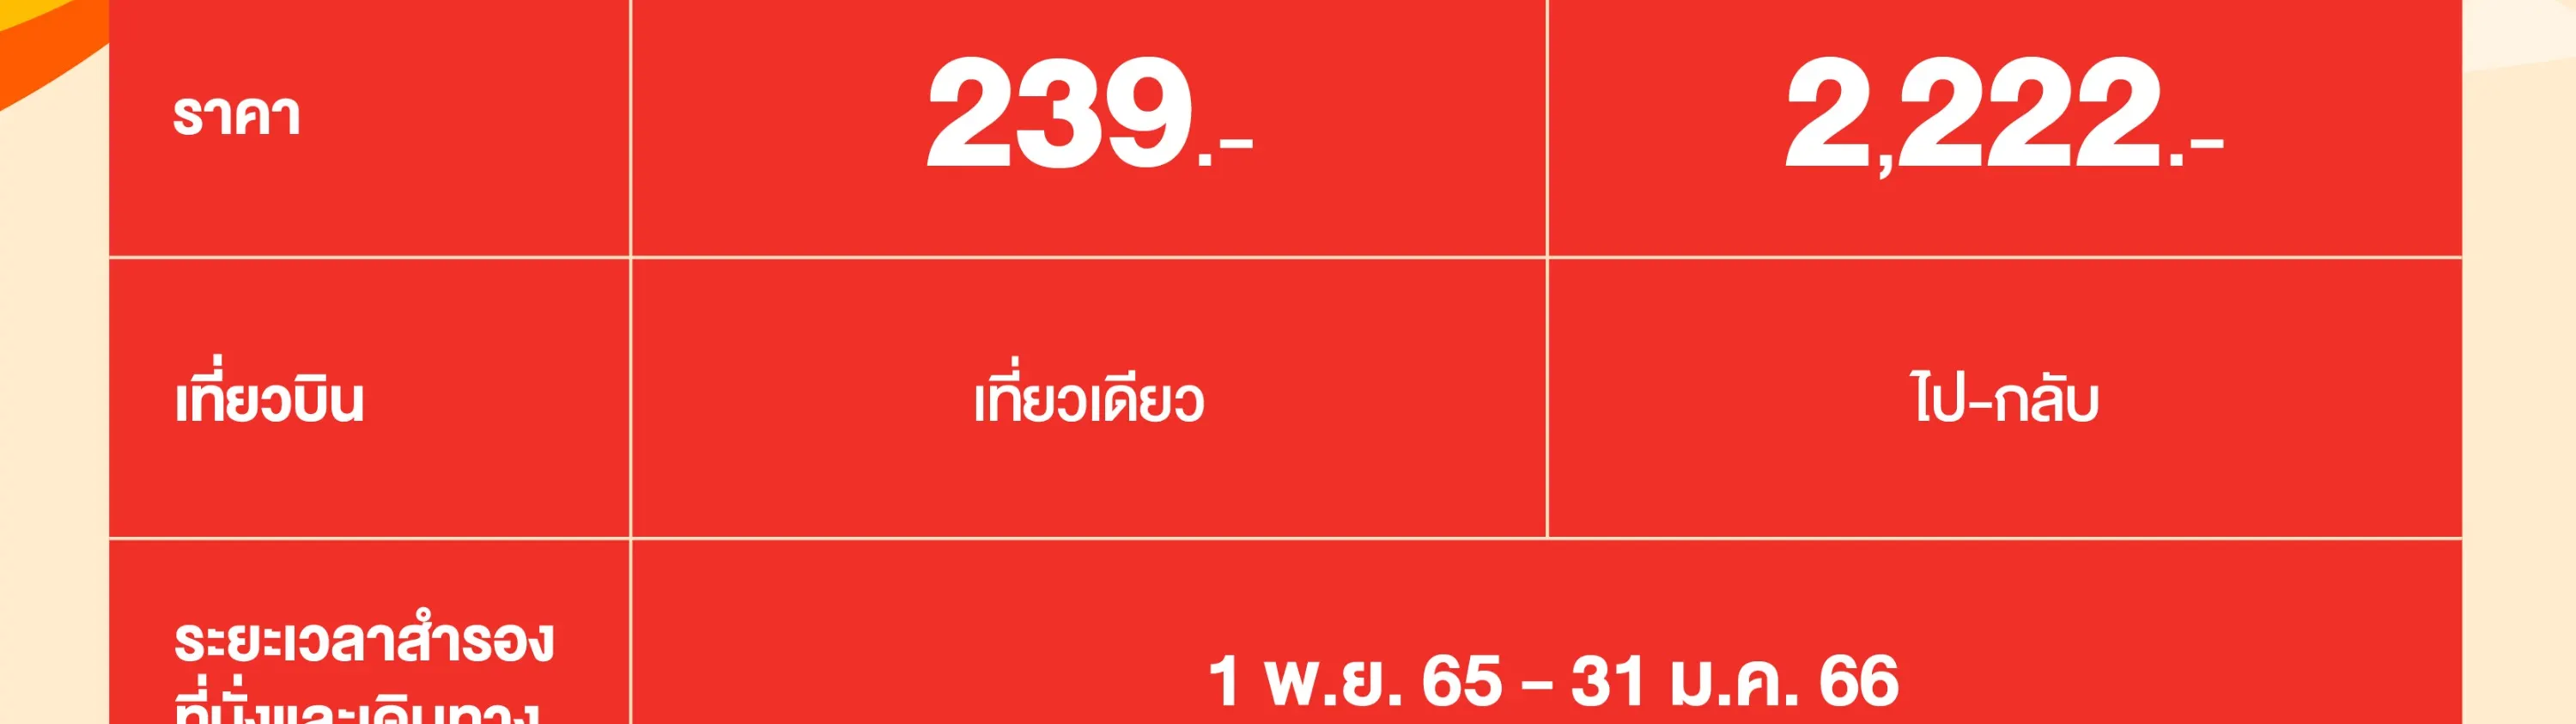 รหัสส่วนลดสายการบินไทยไลอ้อนแอร์สำหรับเที่ยวบินภายในประเทศ - Klook ประเทศไทย